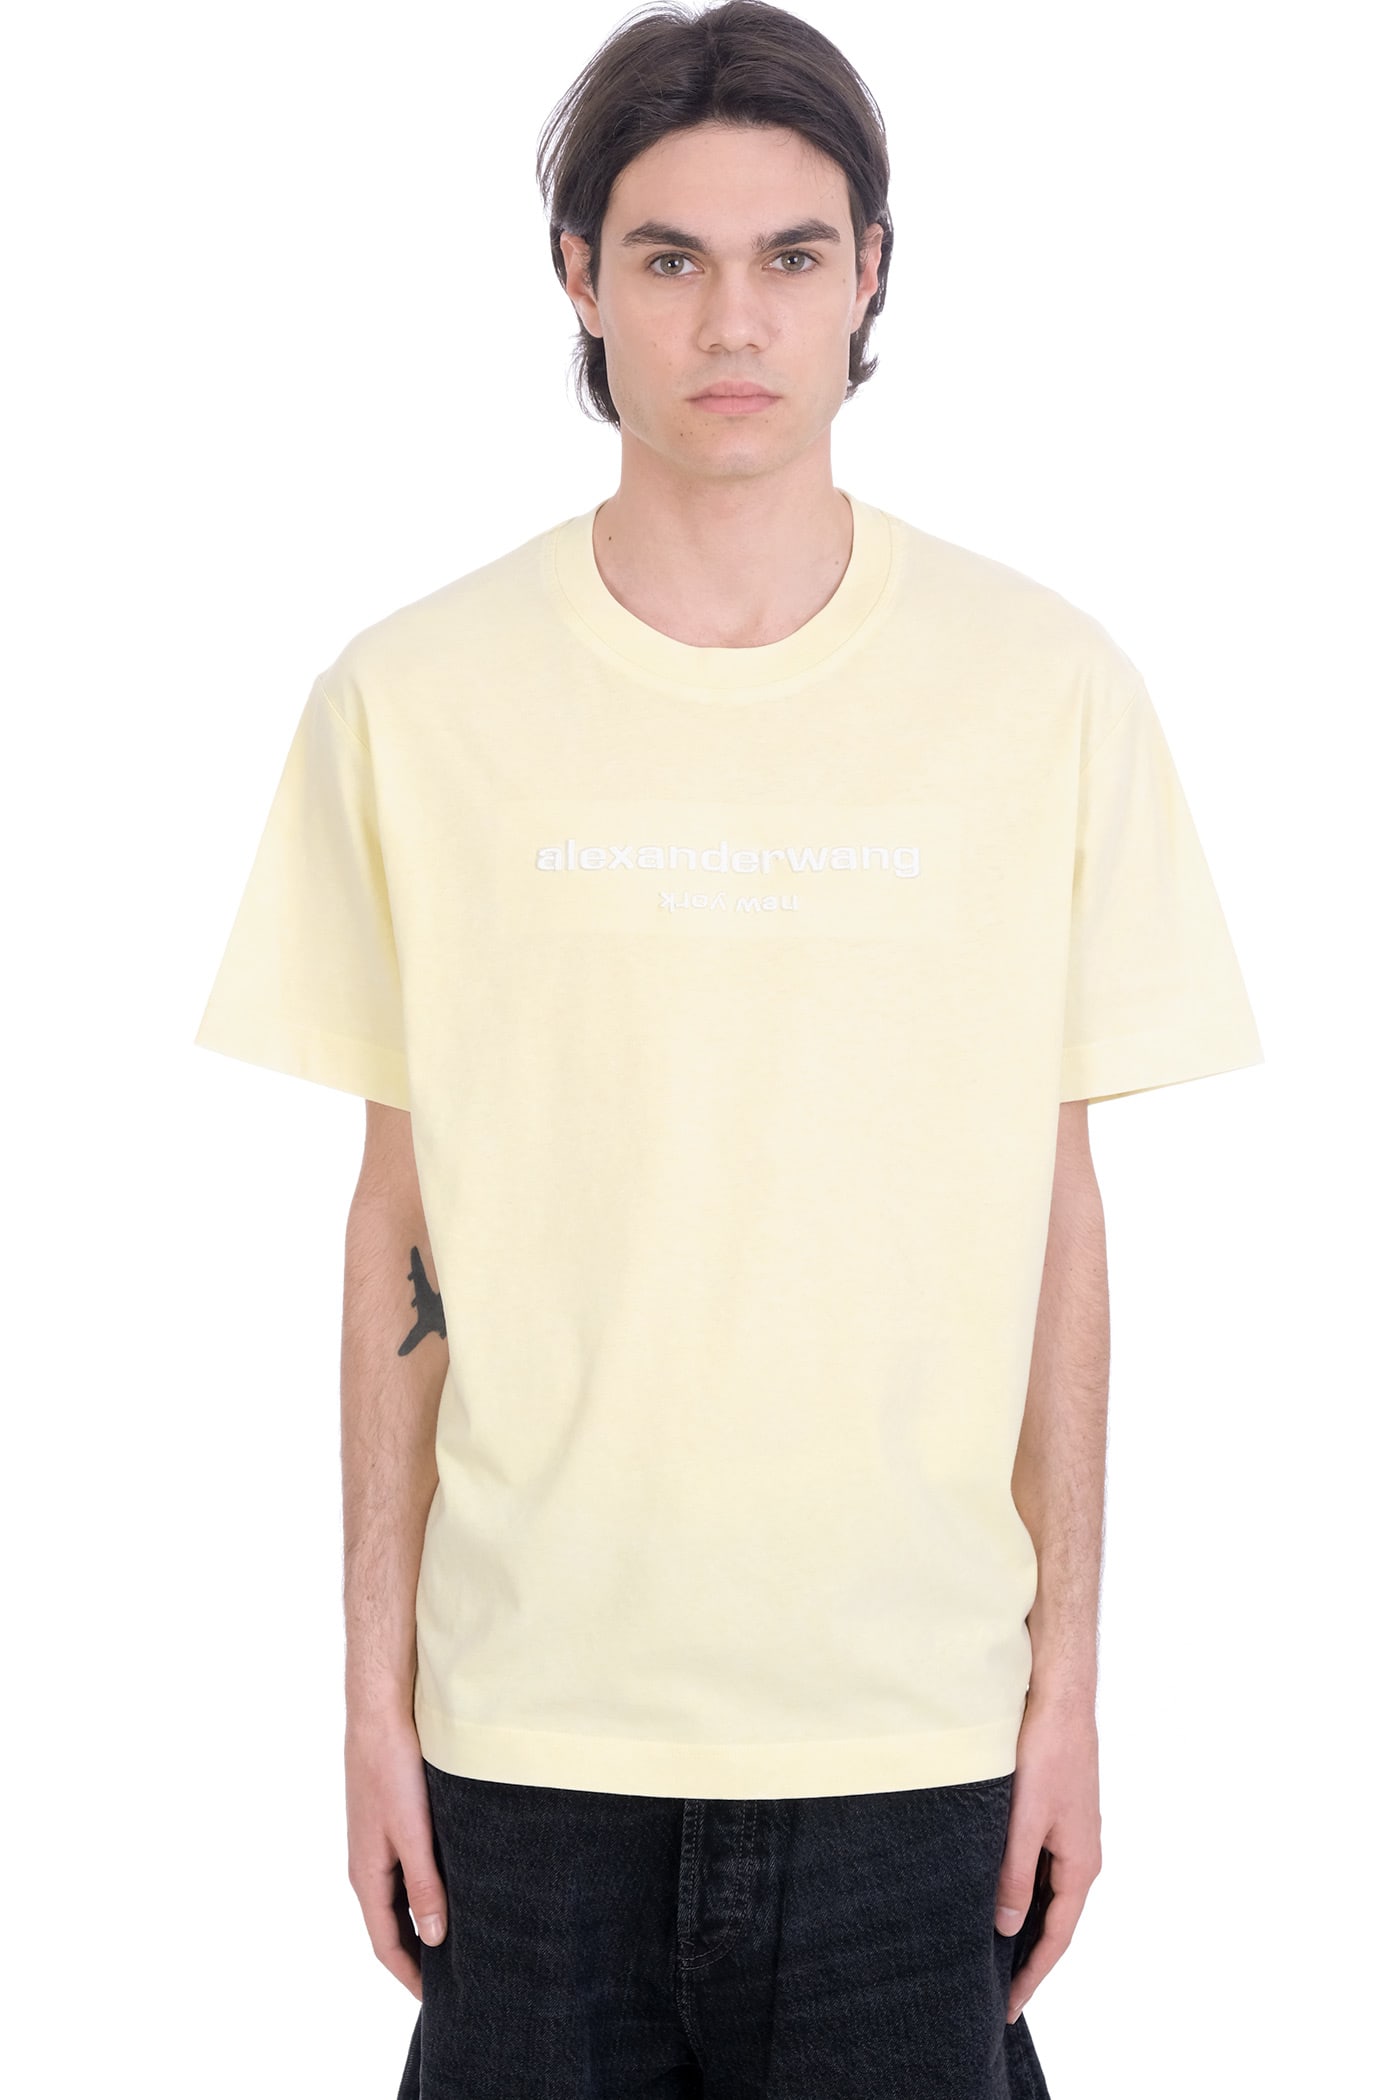 Alexander Wang T-shirt In Yellow Cotton